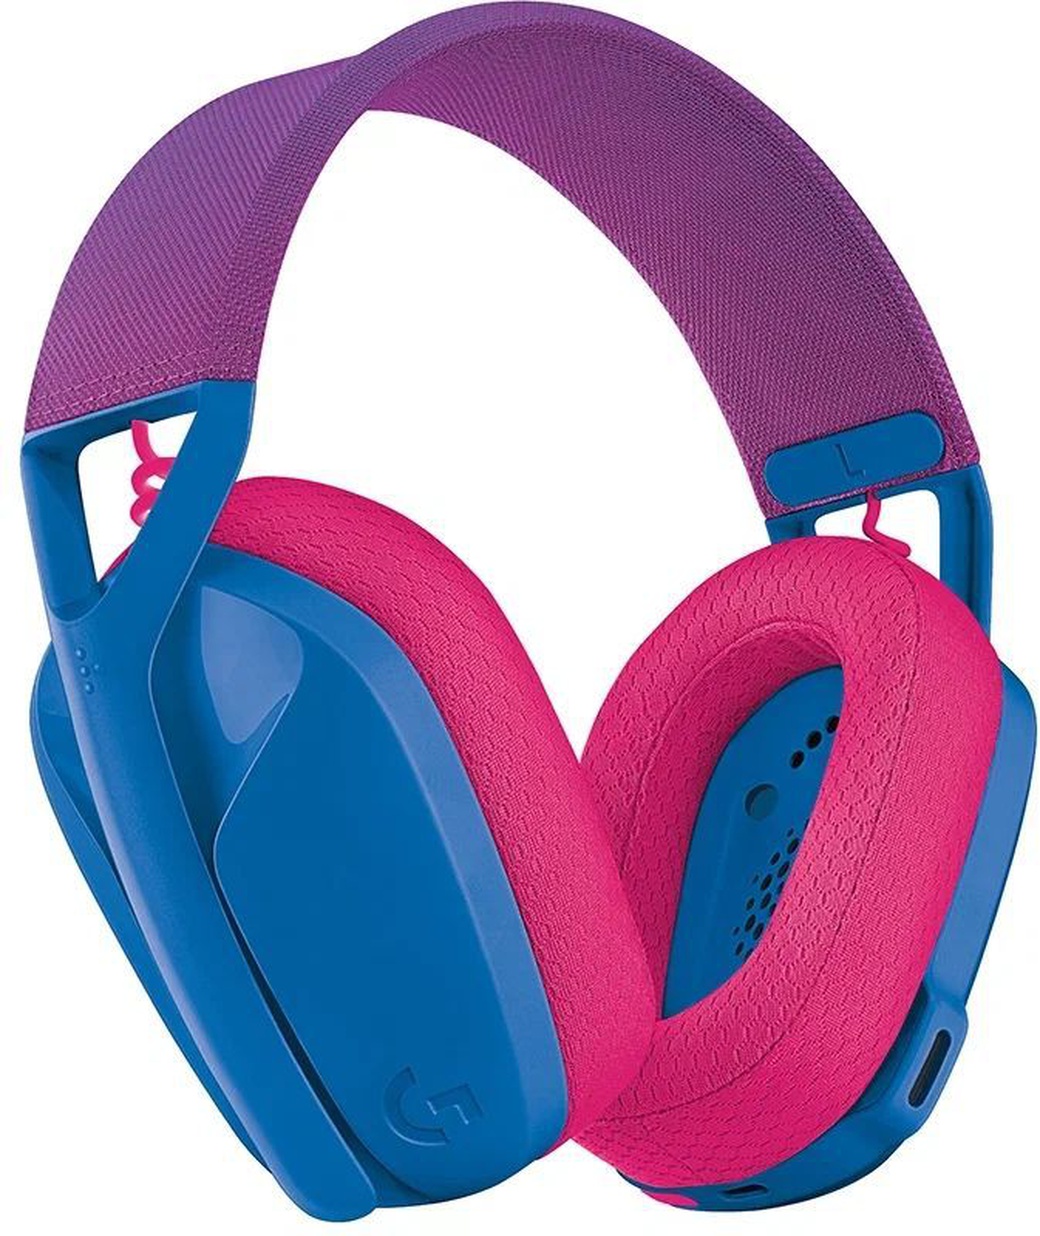 Компьютерная гарнитура Logitech G435, синий/розовый фото